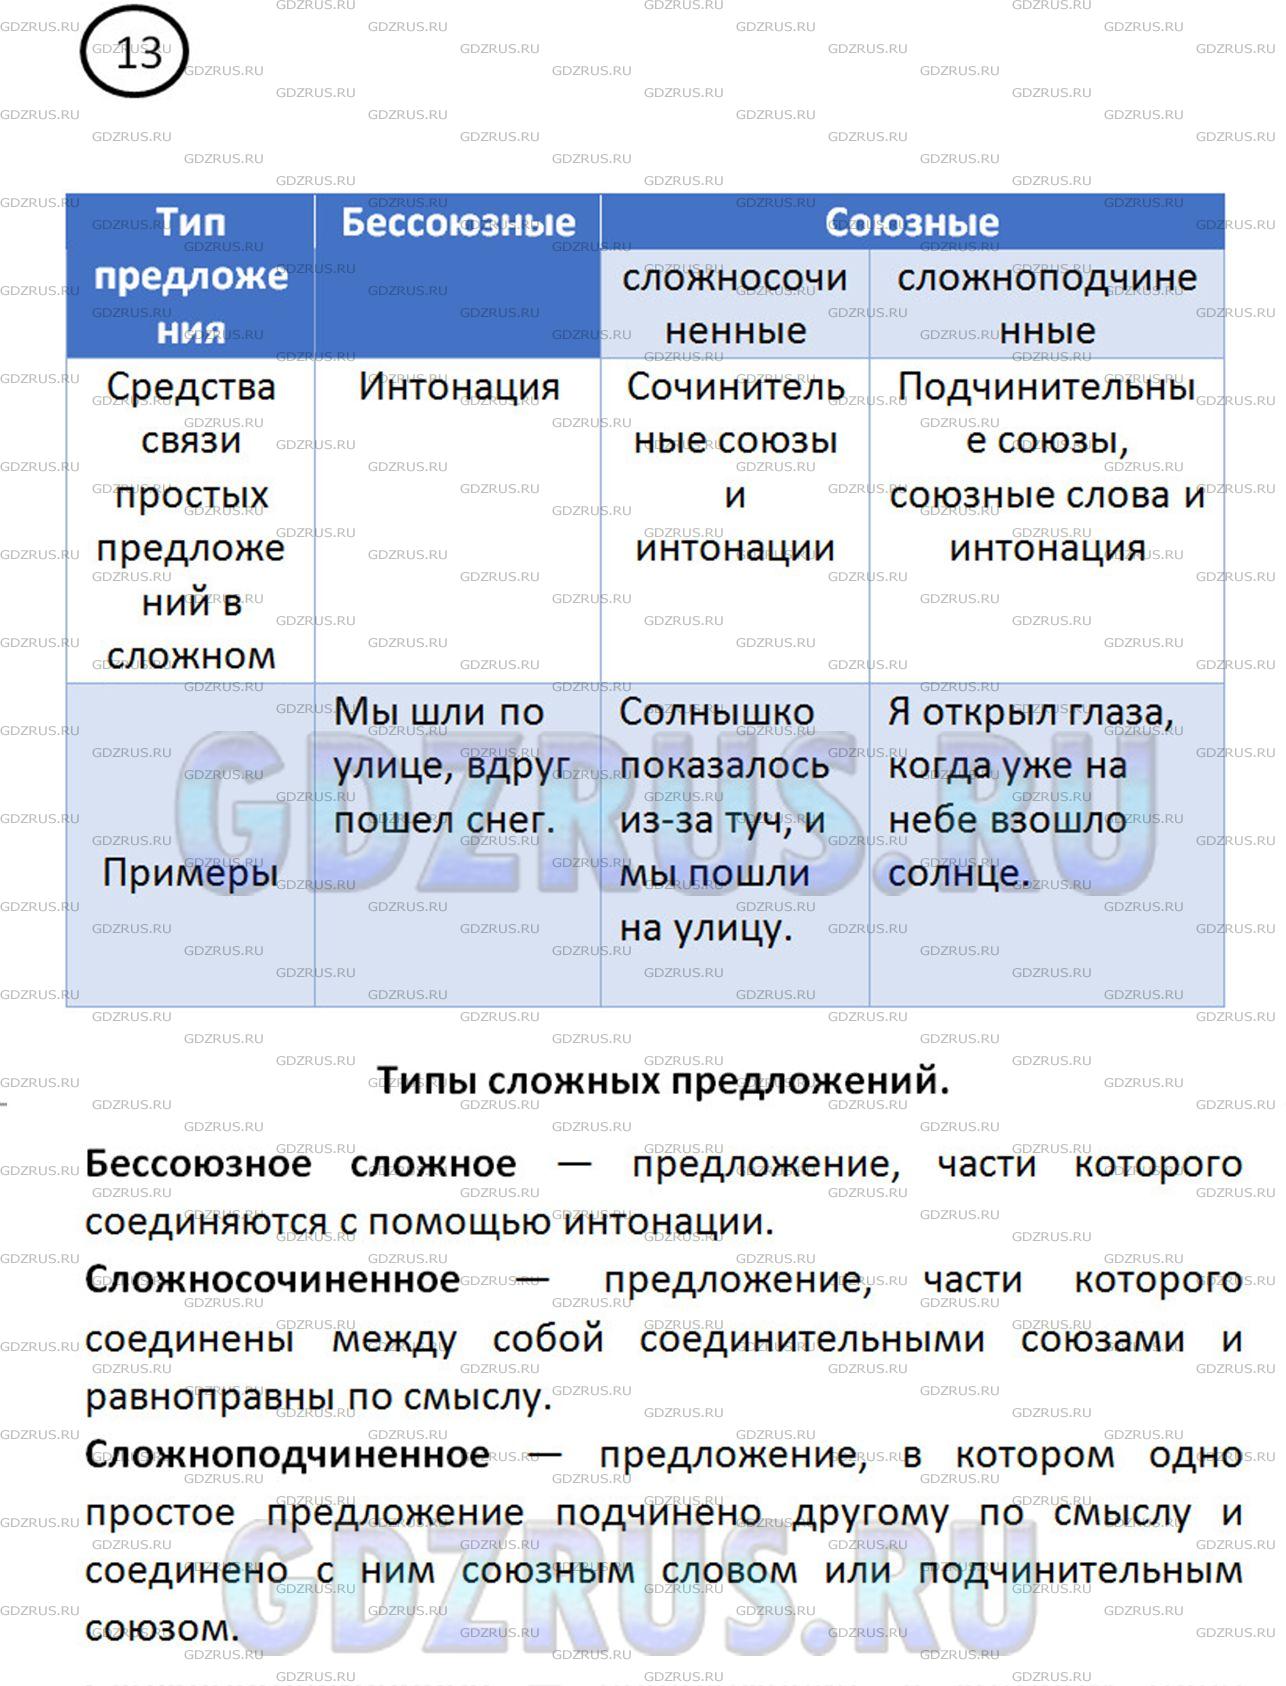 Фото решения 3: ГДЗ по Русскому языку 8 класса: Ладыженская Упр. 13